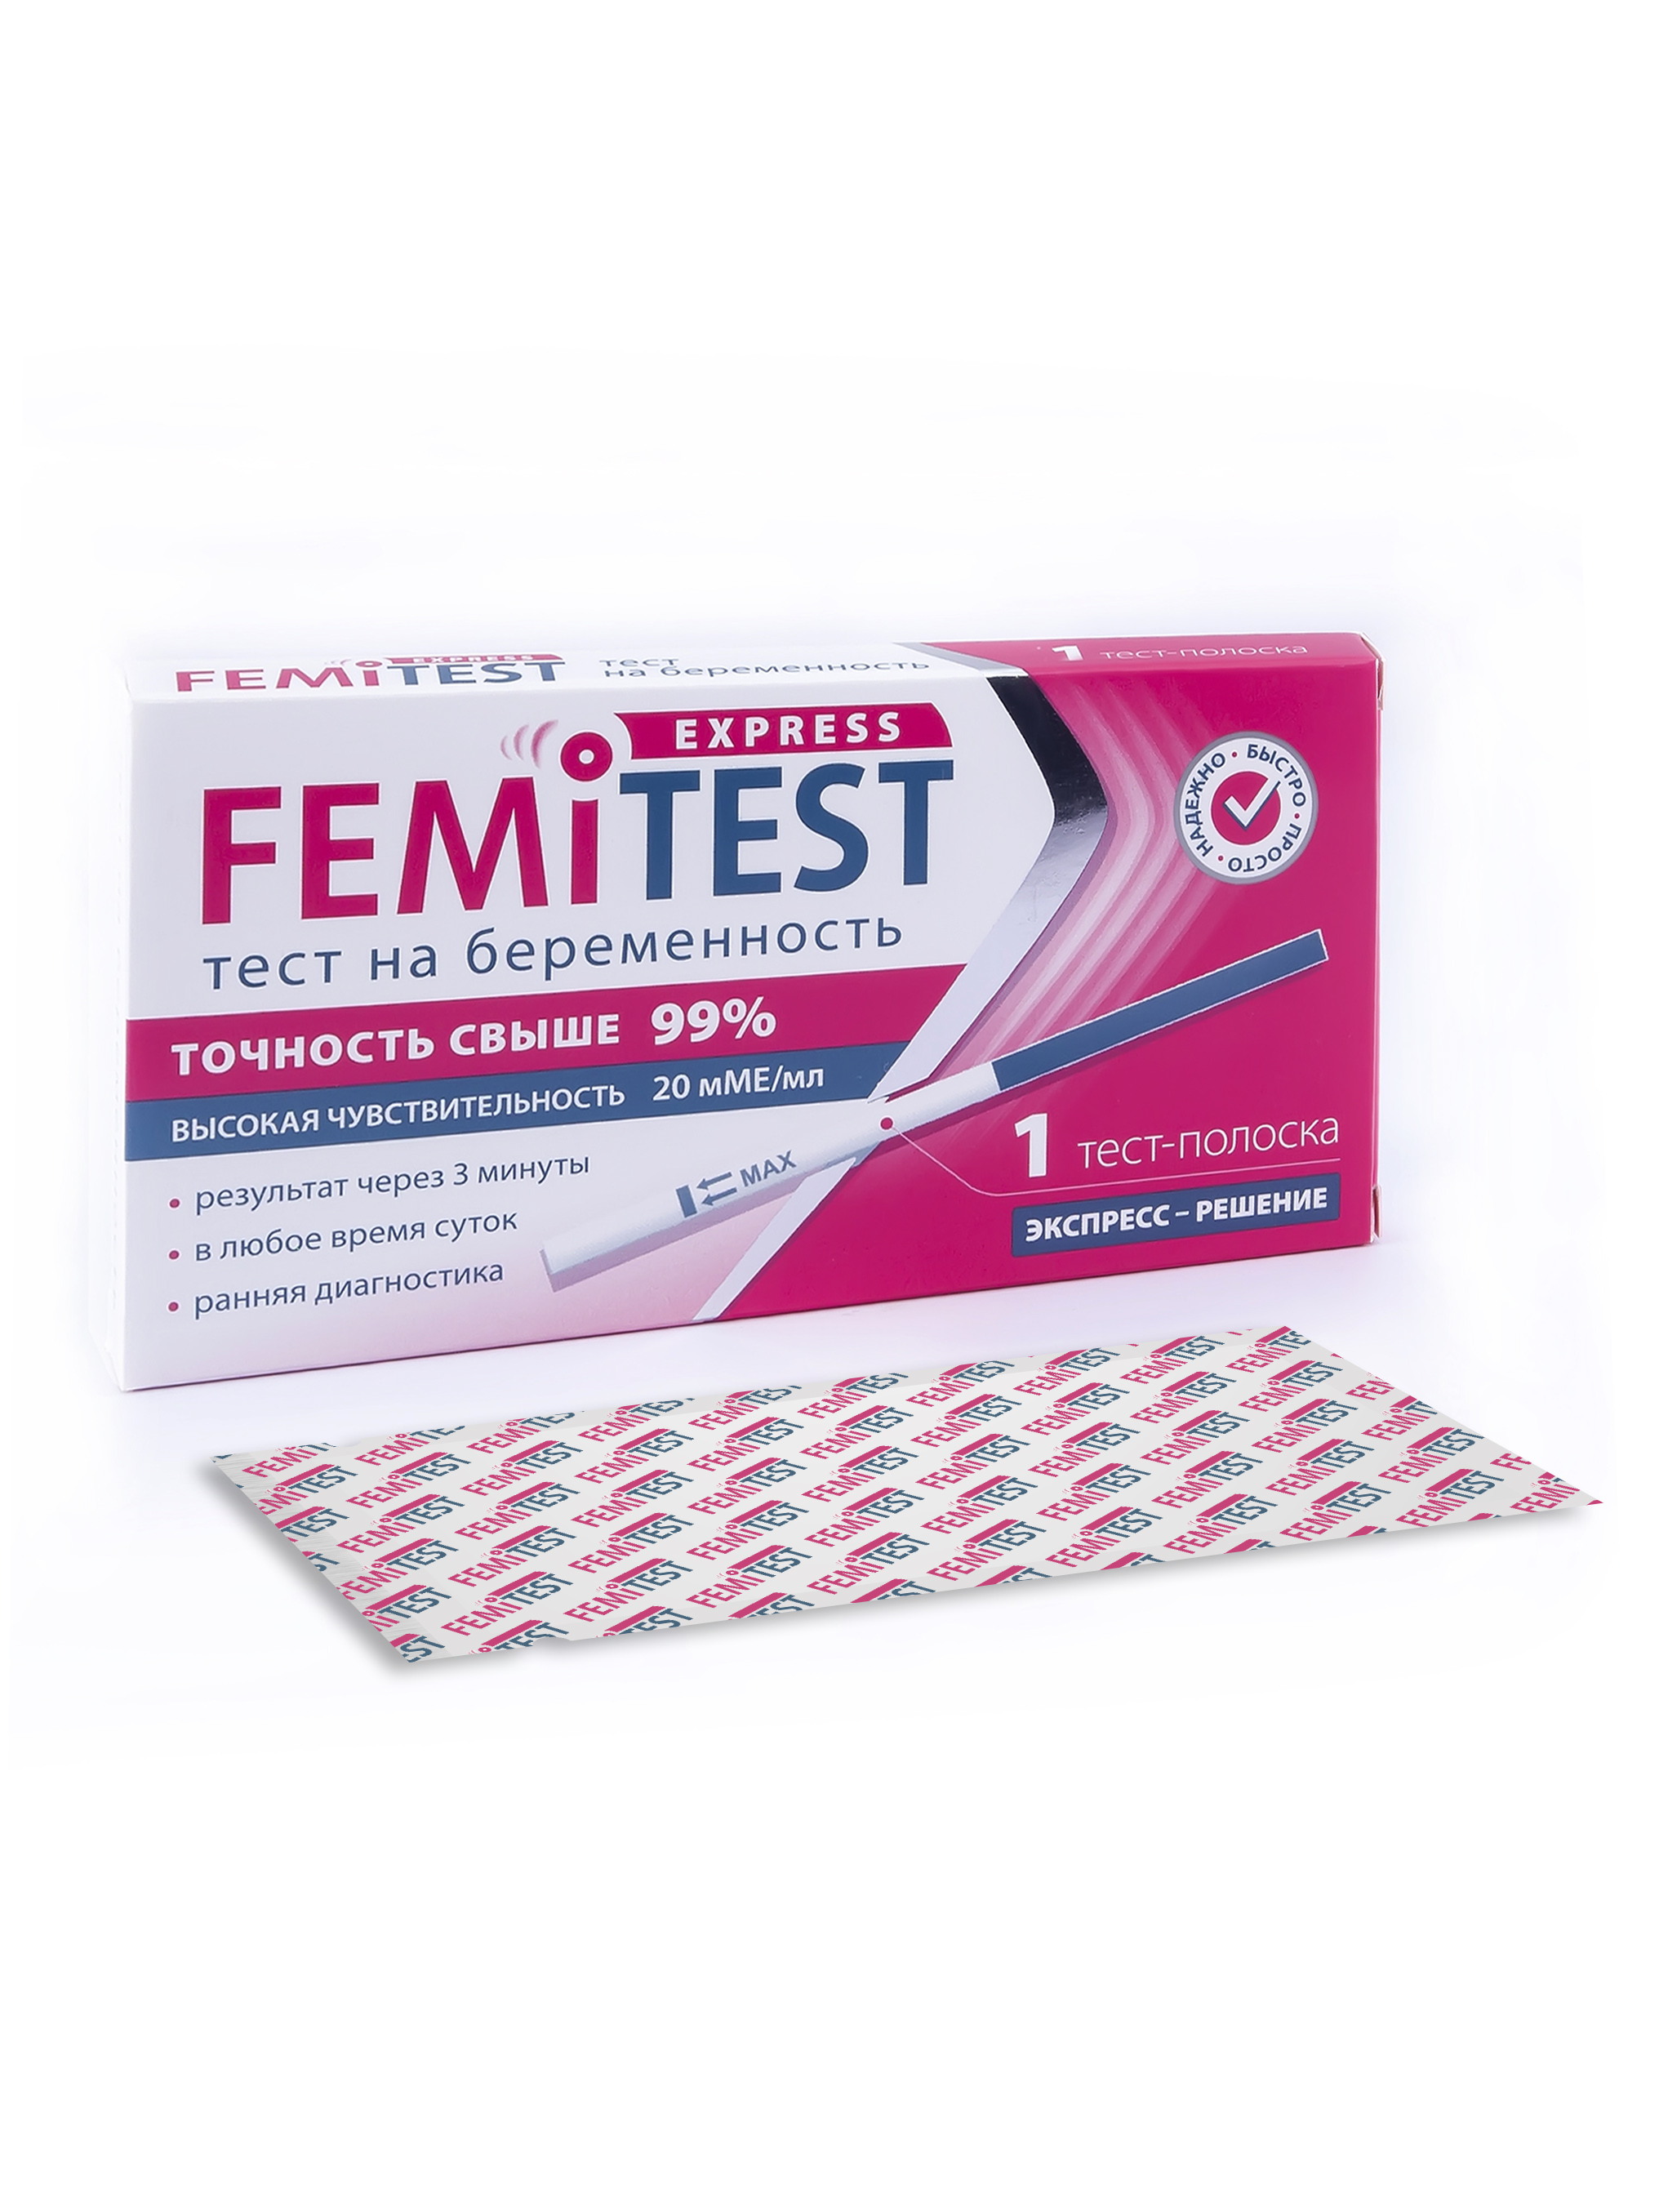 Купить Express Тест для определения беременности тест-полоска №1, Тест FEMiTEST Express для определения беременности тест-полоска 1 шт.